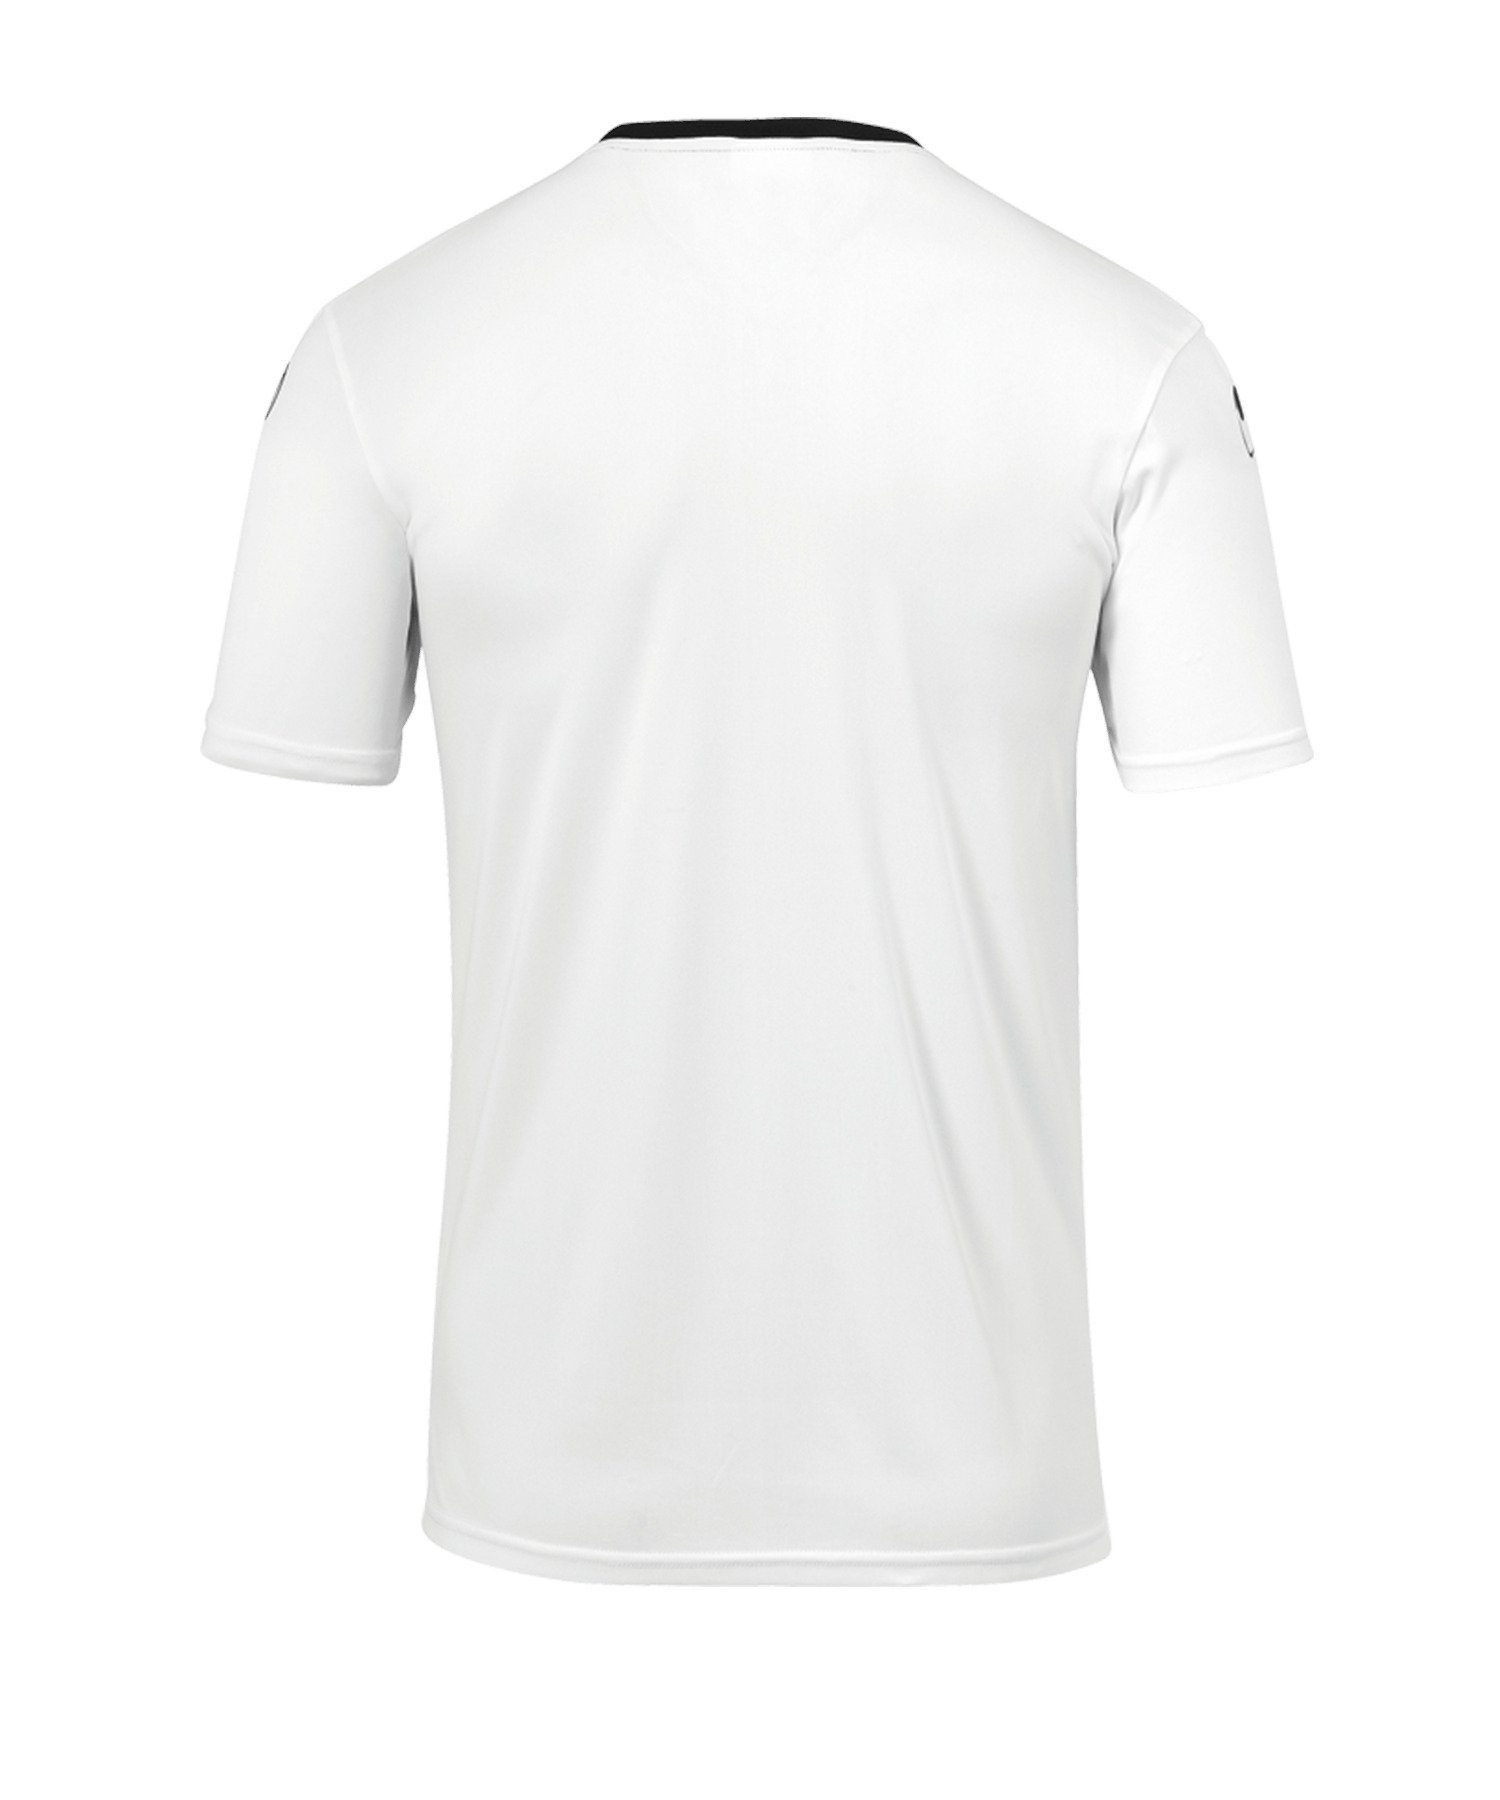 Offense 23 Trainingsshirt weissschwarz uhlsport T-Shirt default